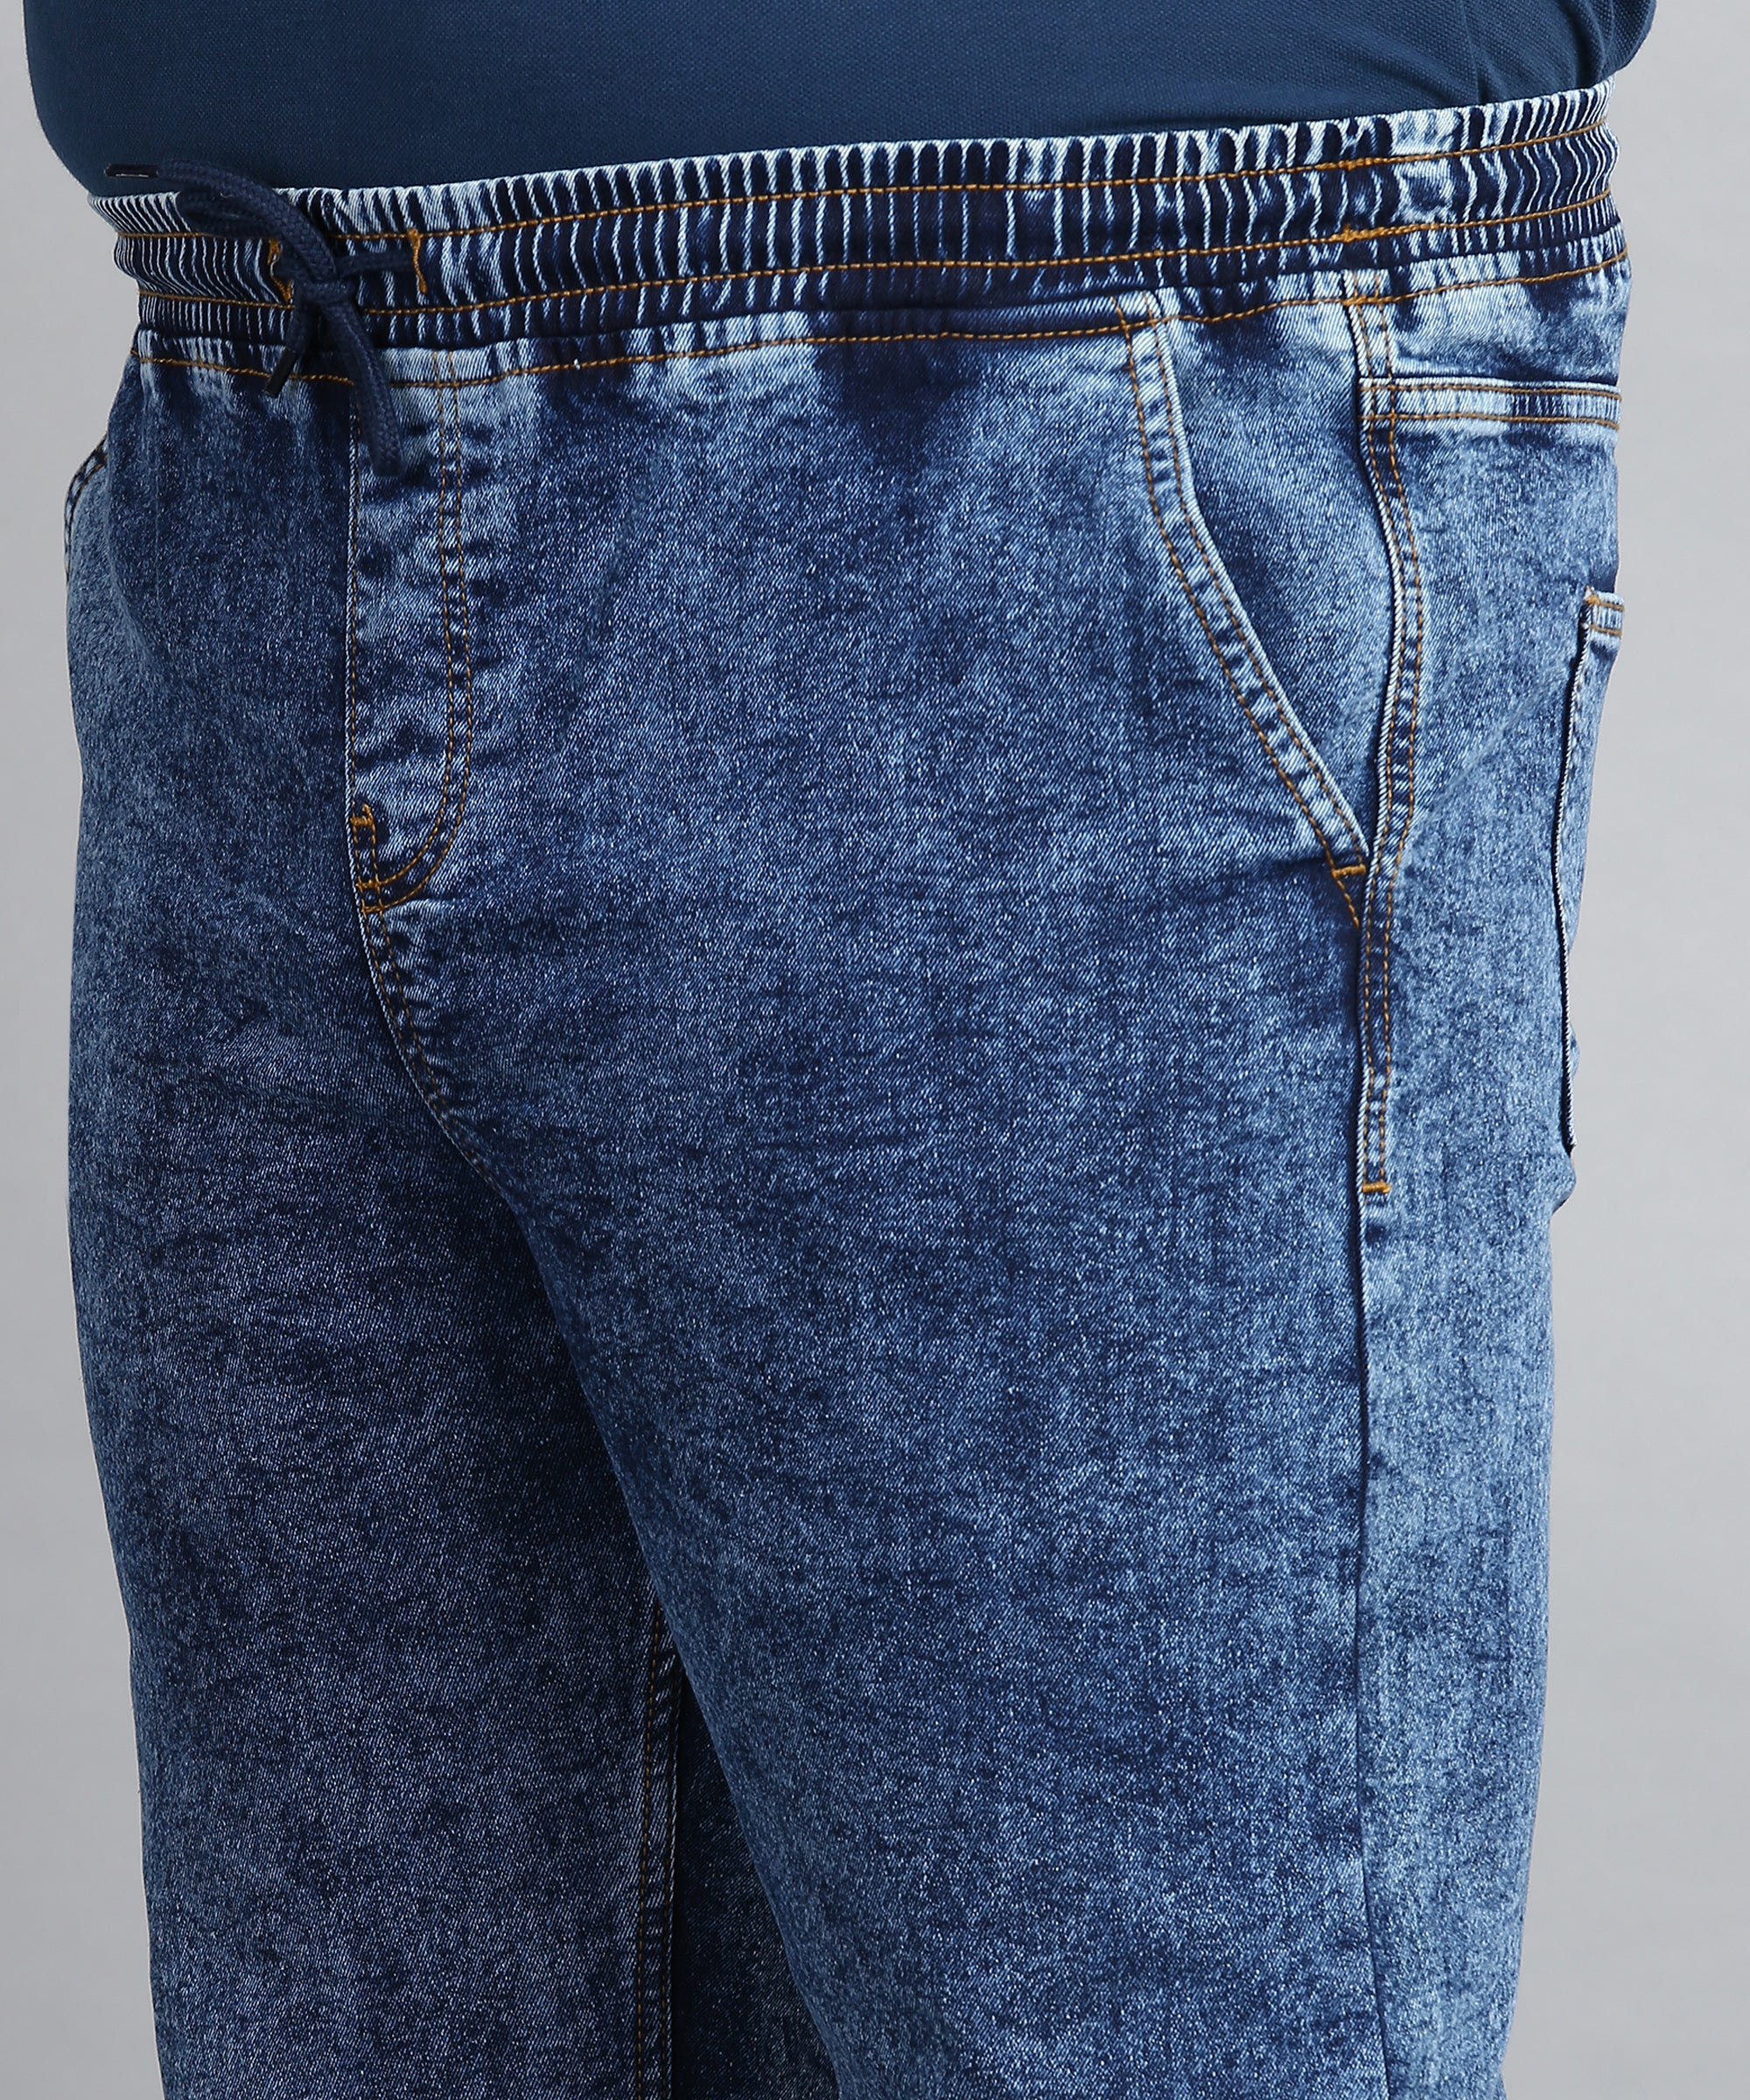 Plus Men's Dark Blue Regular Fit Washed Jogger Jeans Stretchable